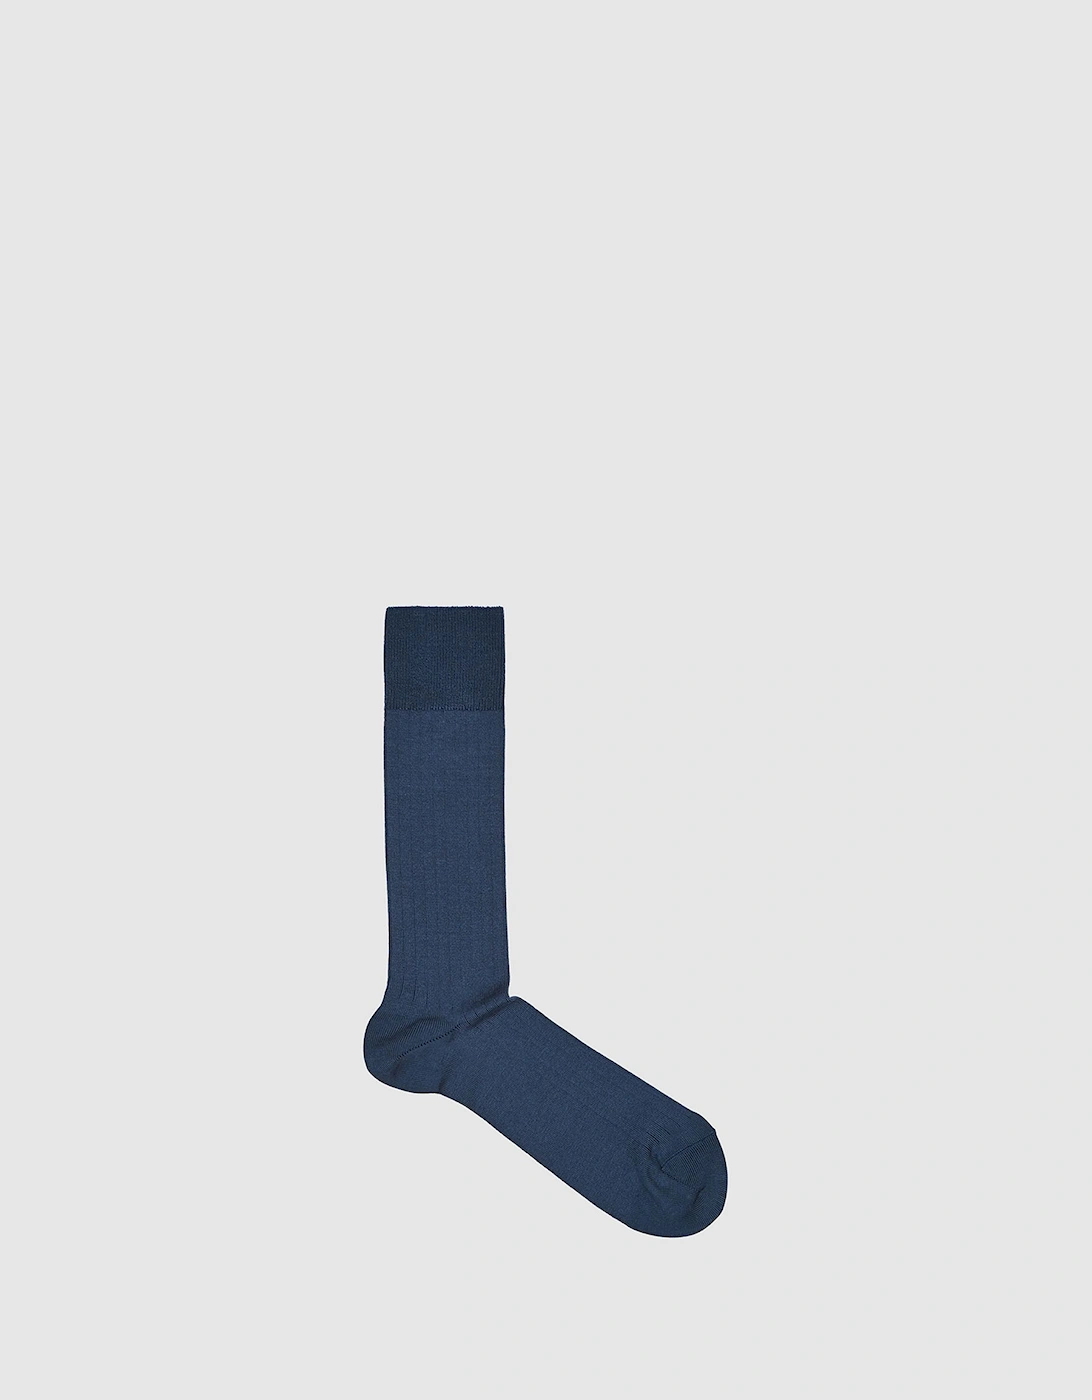 Ribbed Socks, 2 of 1